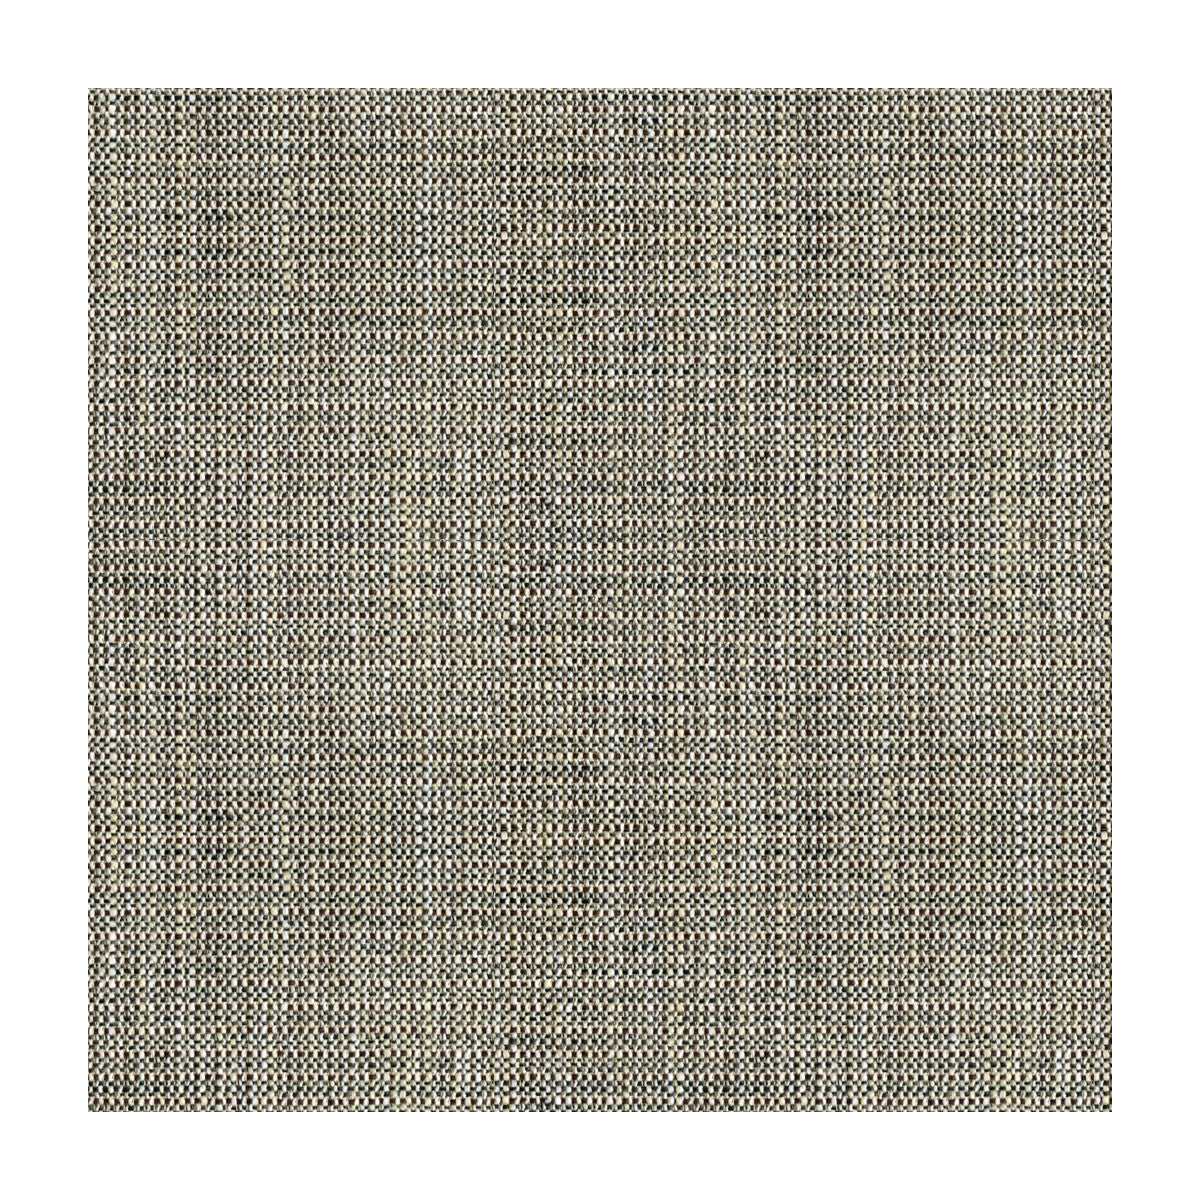 Kravet Smart fabric in 32792-81 color - pattern 32792.81.0 - by Kravet Basics